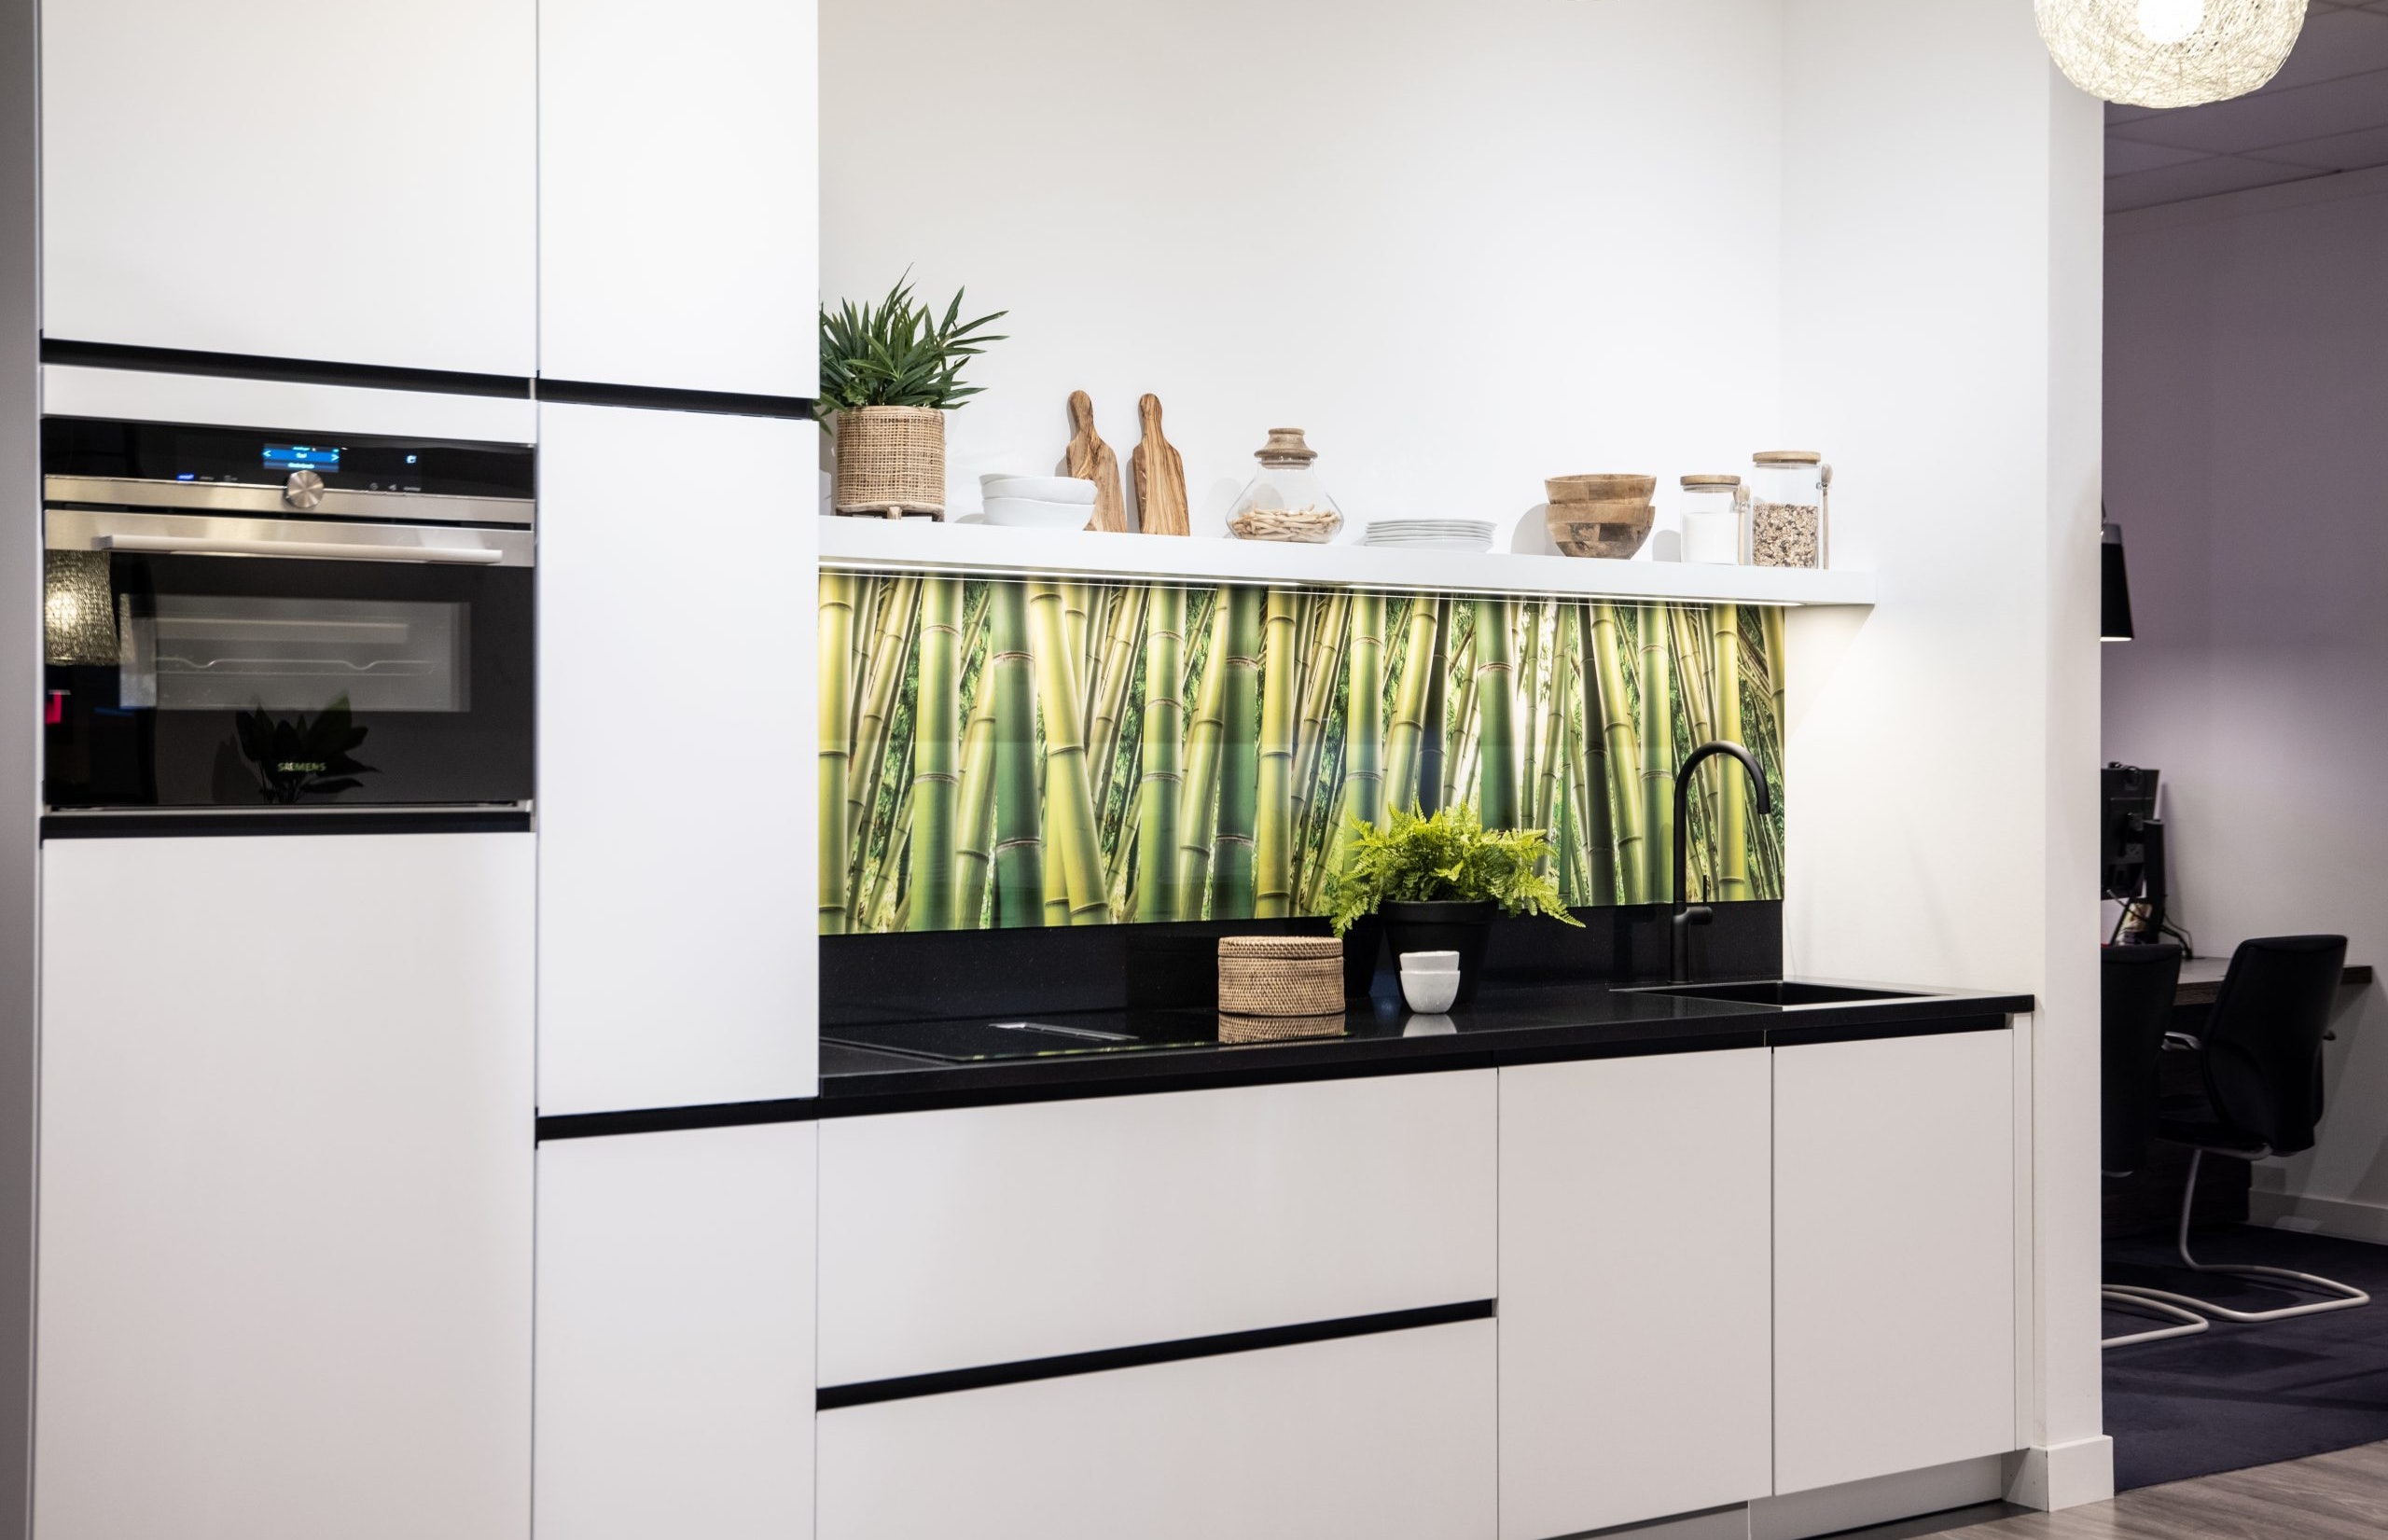 De keuken beschikt over een apparaten set van het merk Siemens - Bemmel & Kroon keukens